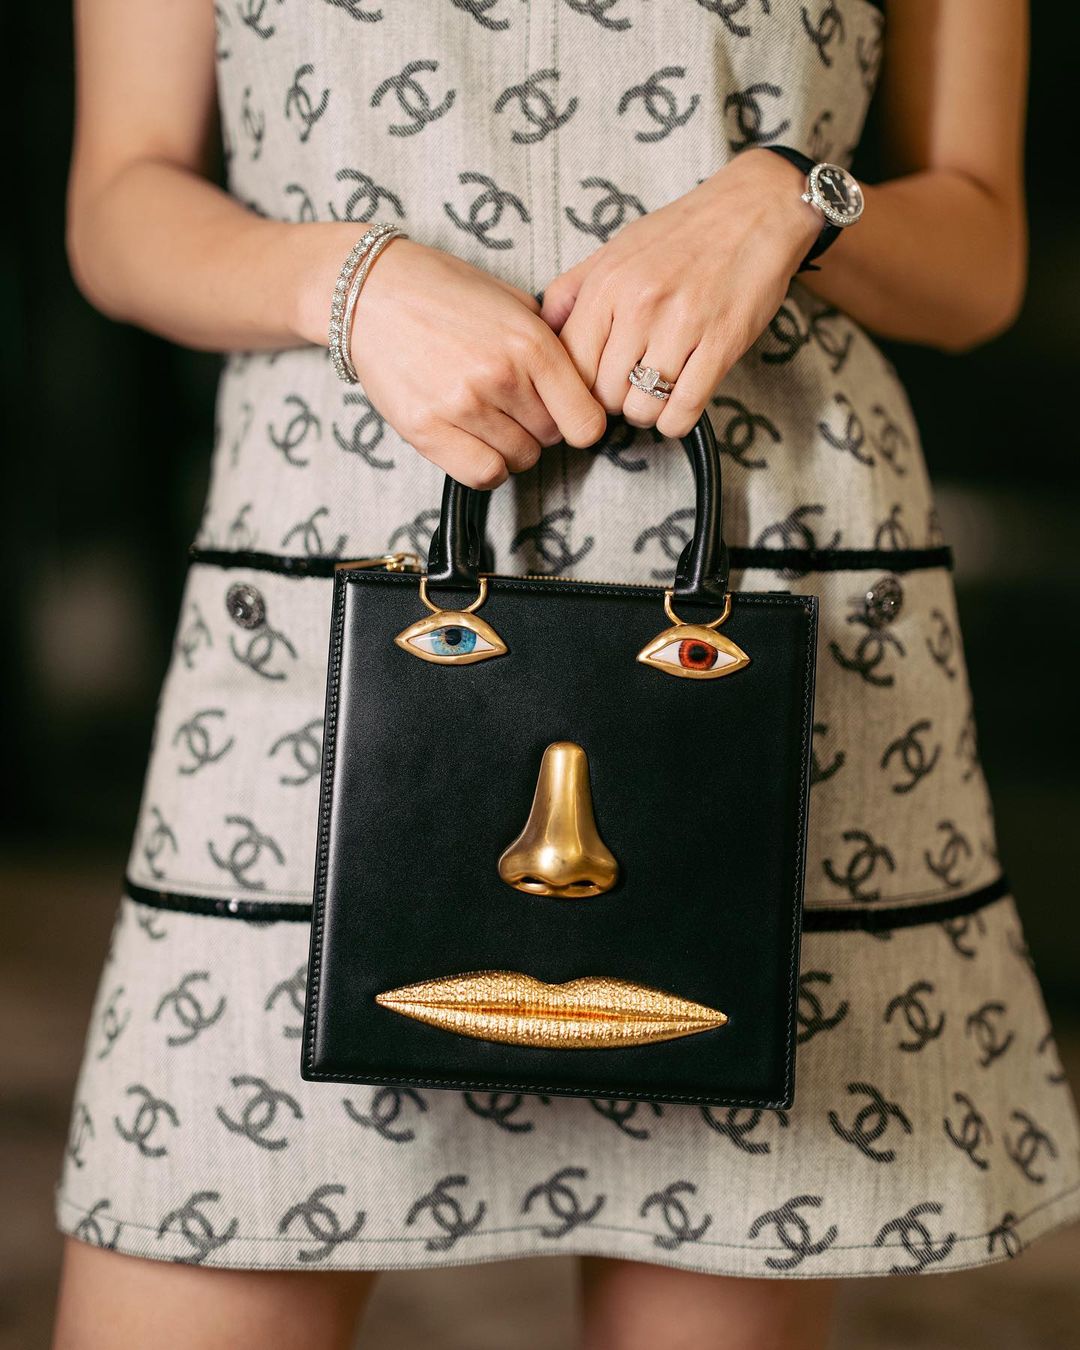 Look: 6 Unique Designer Handbags, As Seen On Marian Rivera